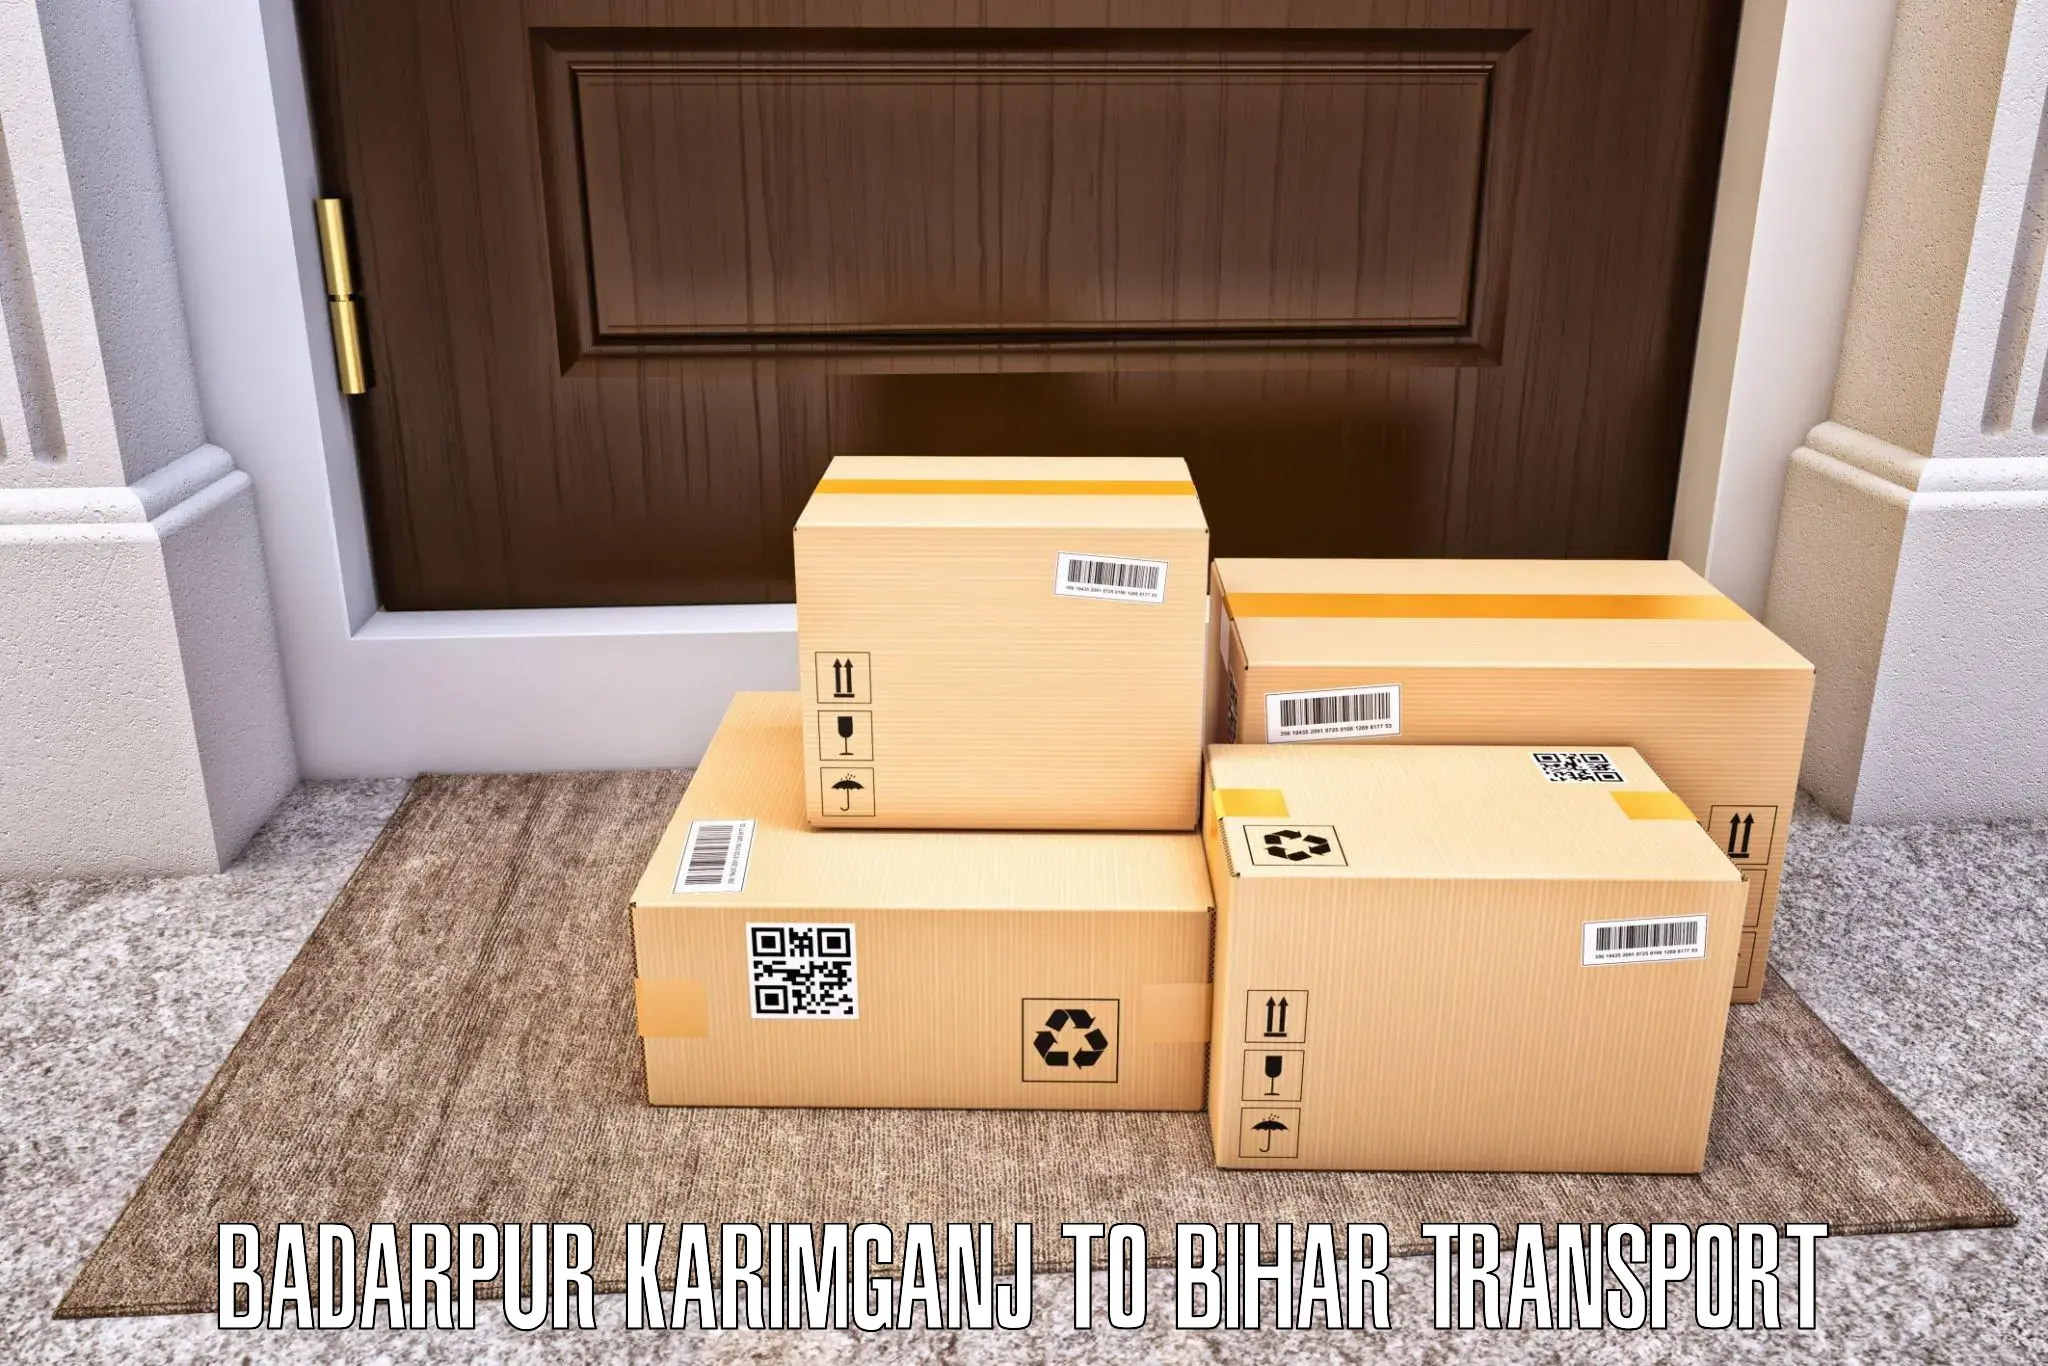 Domestic transport services Badarpur Karimganj to Bhagalpur